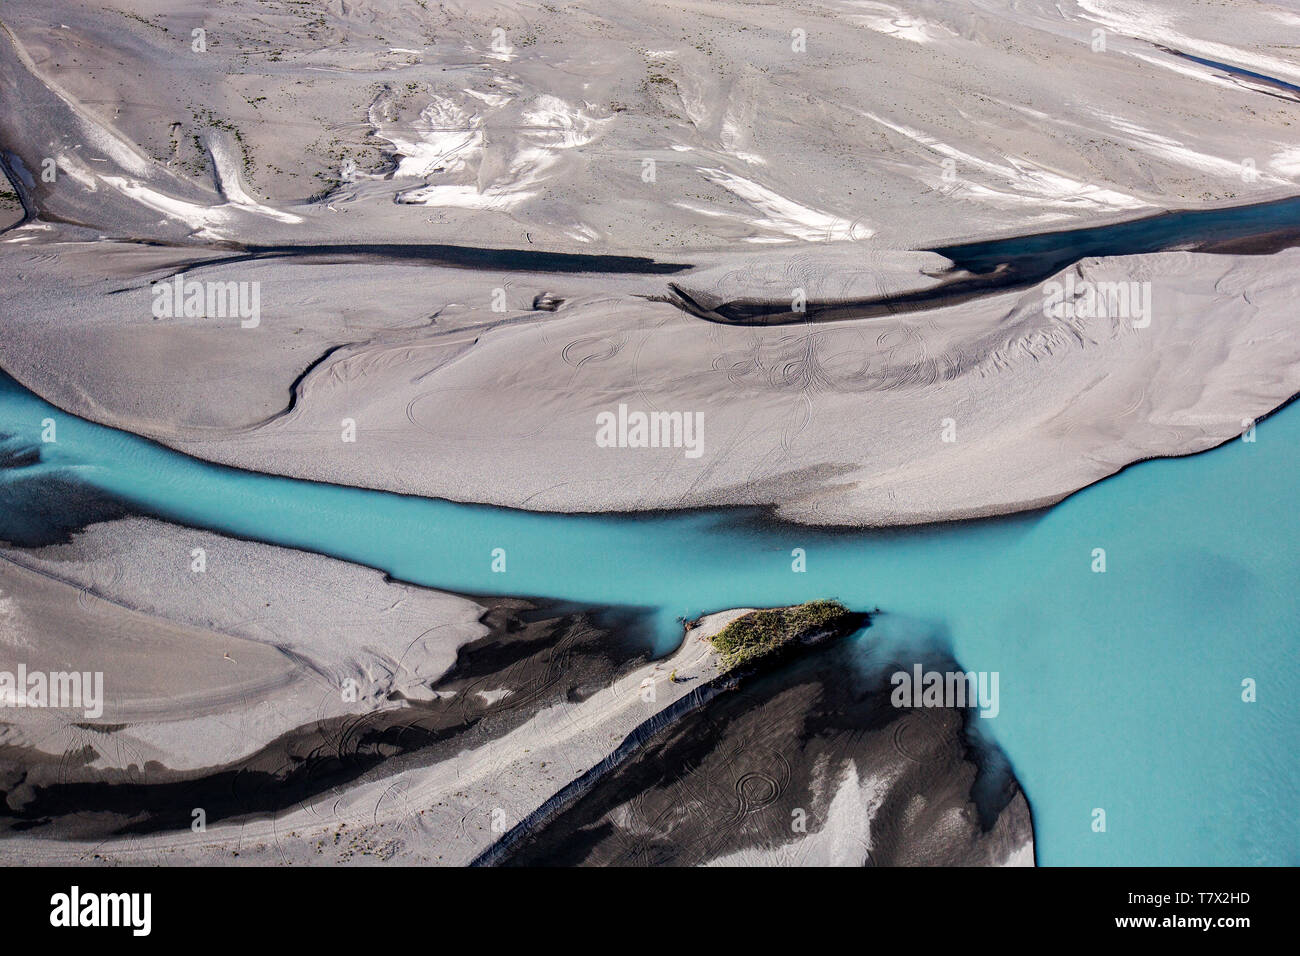 Les sédiments et les boues provenant de la proximité du Glacier Knik glacier cette couleur river jaunes. Il y a des milliers de glaciers en Alaska, et au moins 616 d'entre eux sont nommés. Ensemble, ils sont en train de perdre 75 milliards de tonnes de glace chaque année en raison de la fonte. Ce chiffre est susceptible d'augmenter dans les années à venir. Mai 2015 a été la plus chaude en 91 ans. Dans un monde normal, l'eau de fonte des glaciers contribuent à réguler la température et le débit des rivières dans le parc des Glaciers comme celui sur la photo. Avec la disparition des glaciers, dans le passage d'eau va diminuer et la température de l'eau d'augmenter, peut-être provoquer des ex Banque D'Images